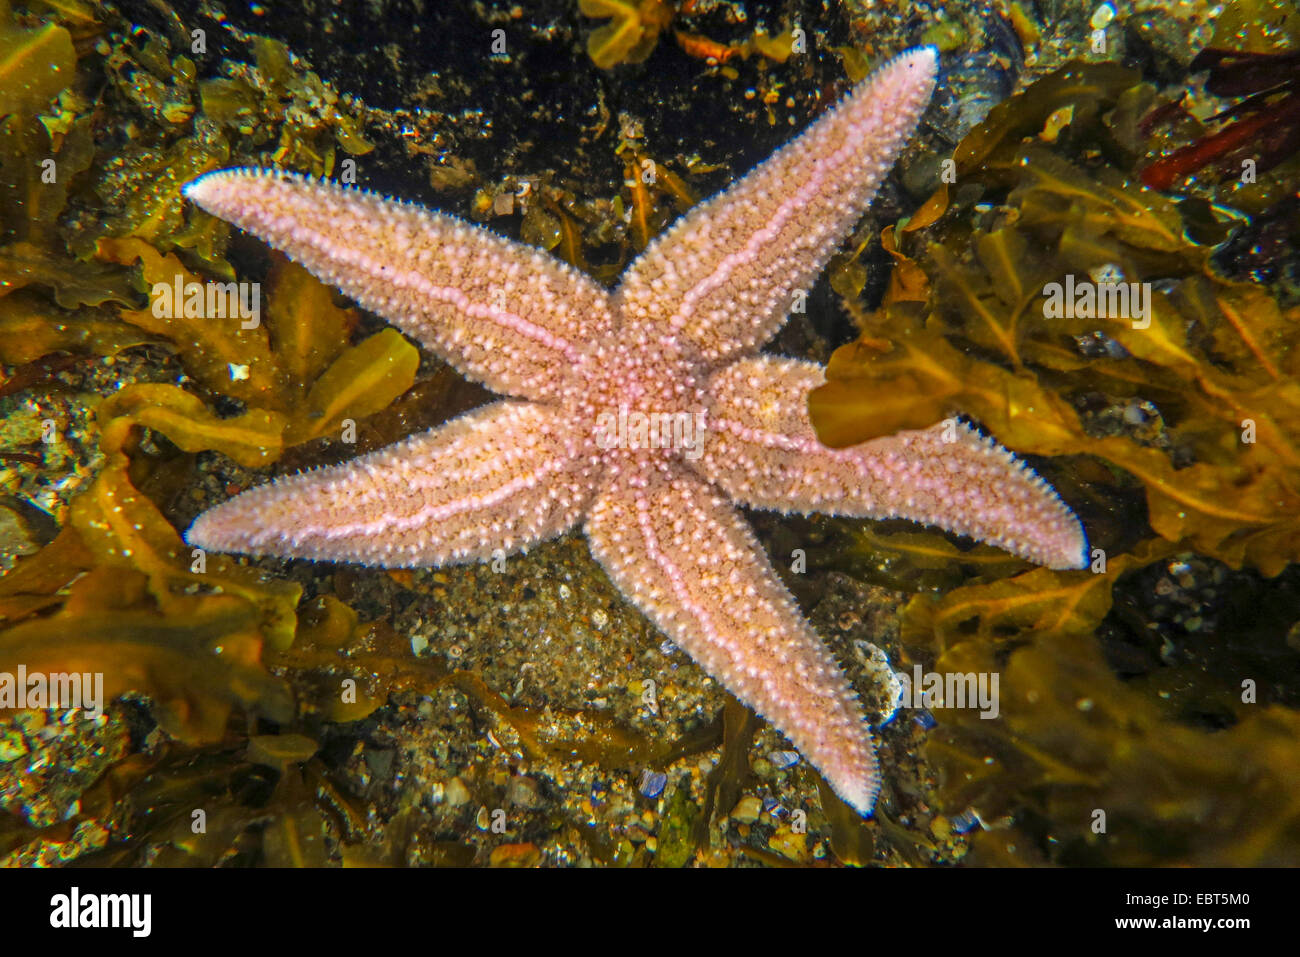 L'étoile de mer commune, politique européenne seastar (Asterias rubens), entre l'algue dans l'eau peu profonde, la Norvège, Nordland Banque D'Images